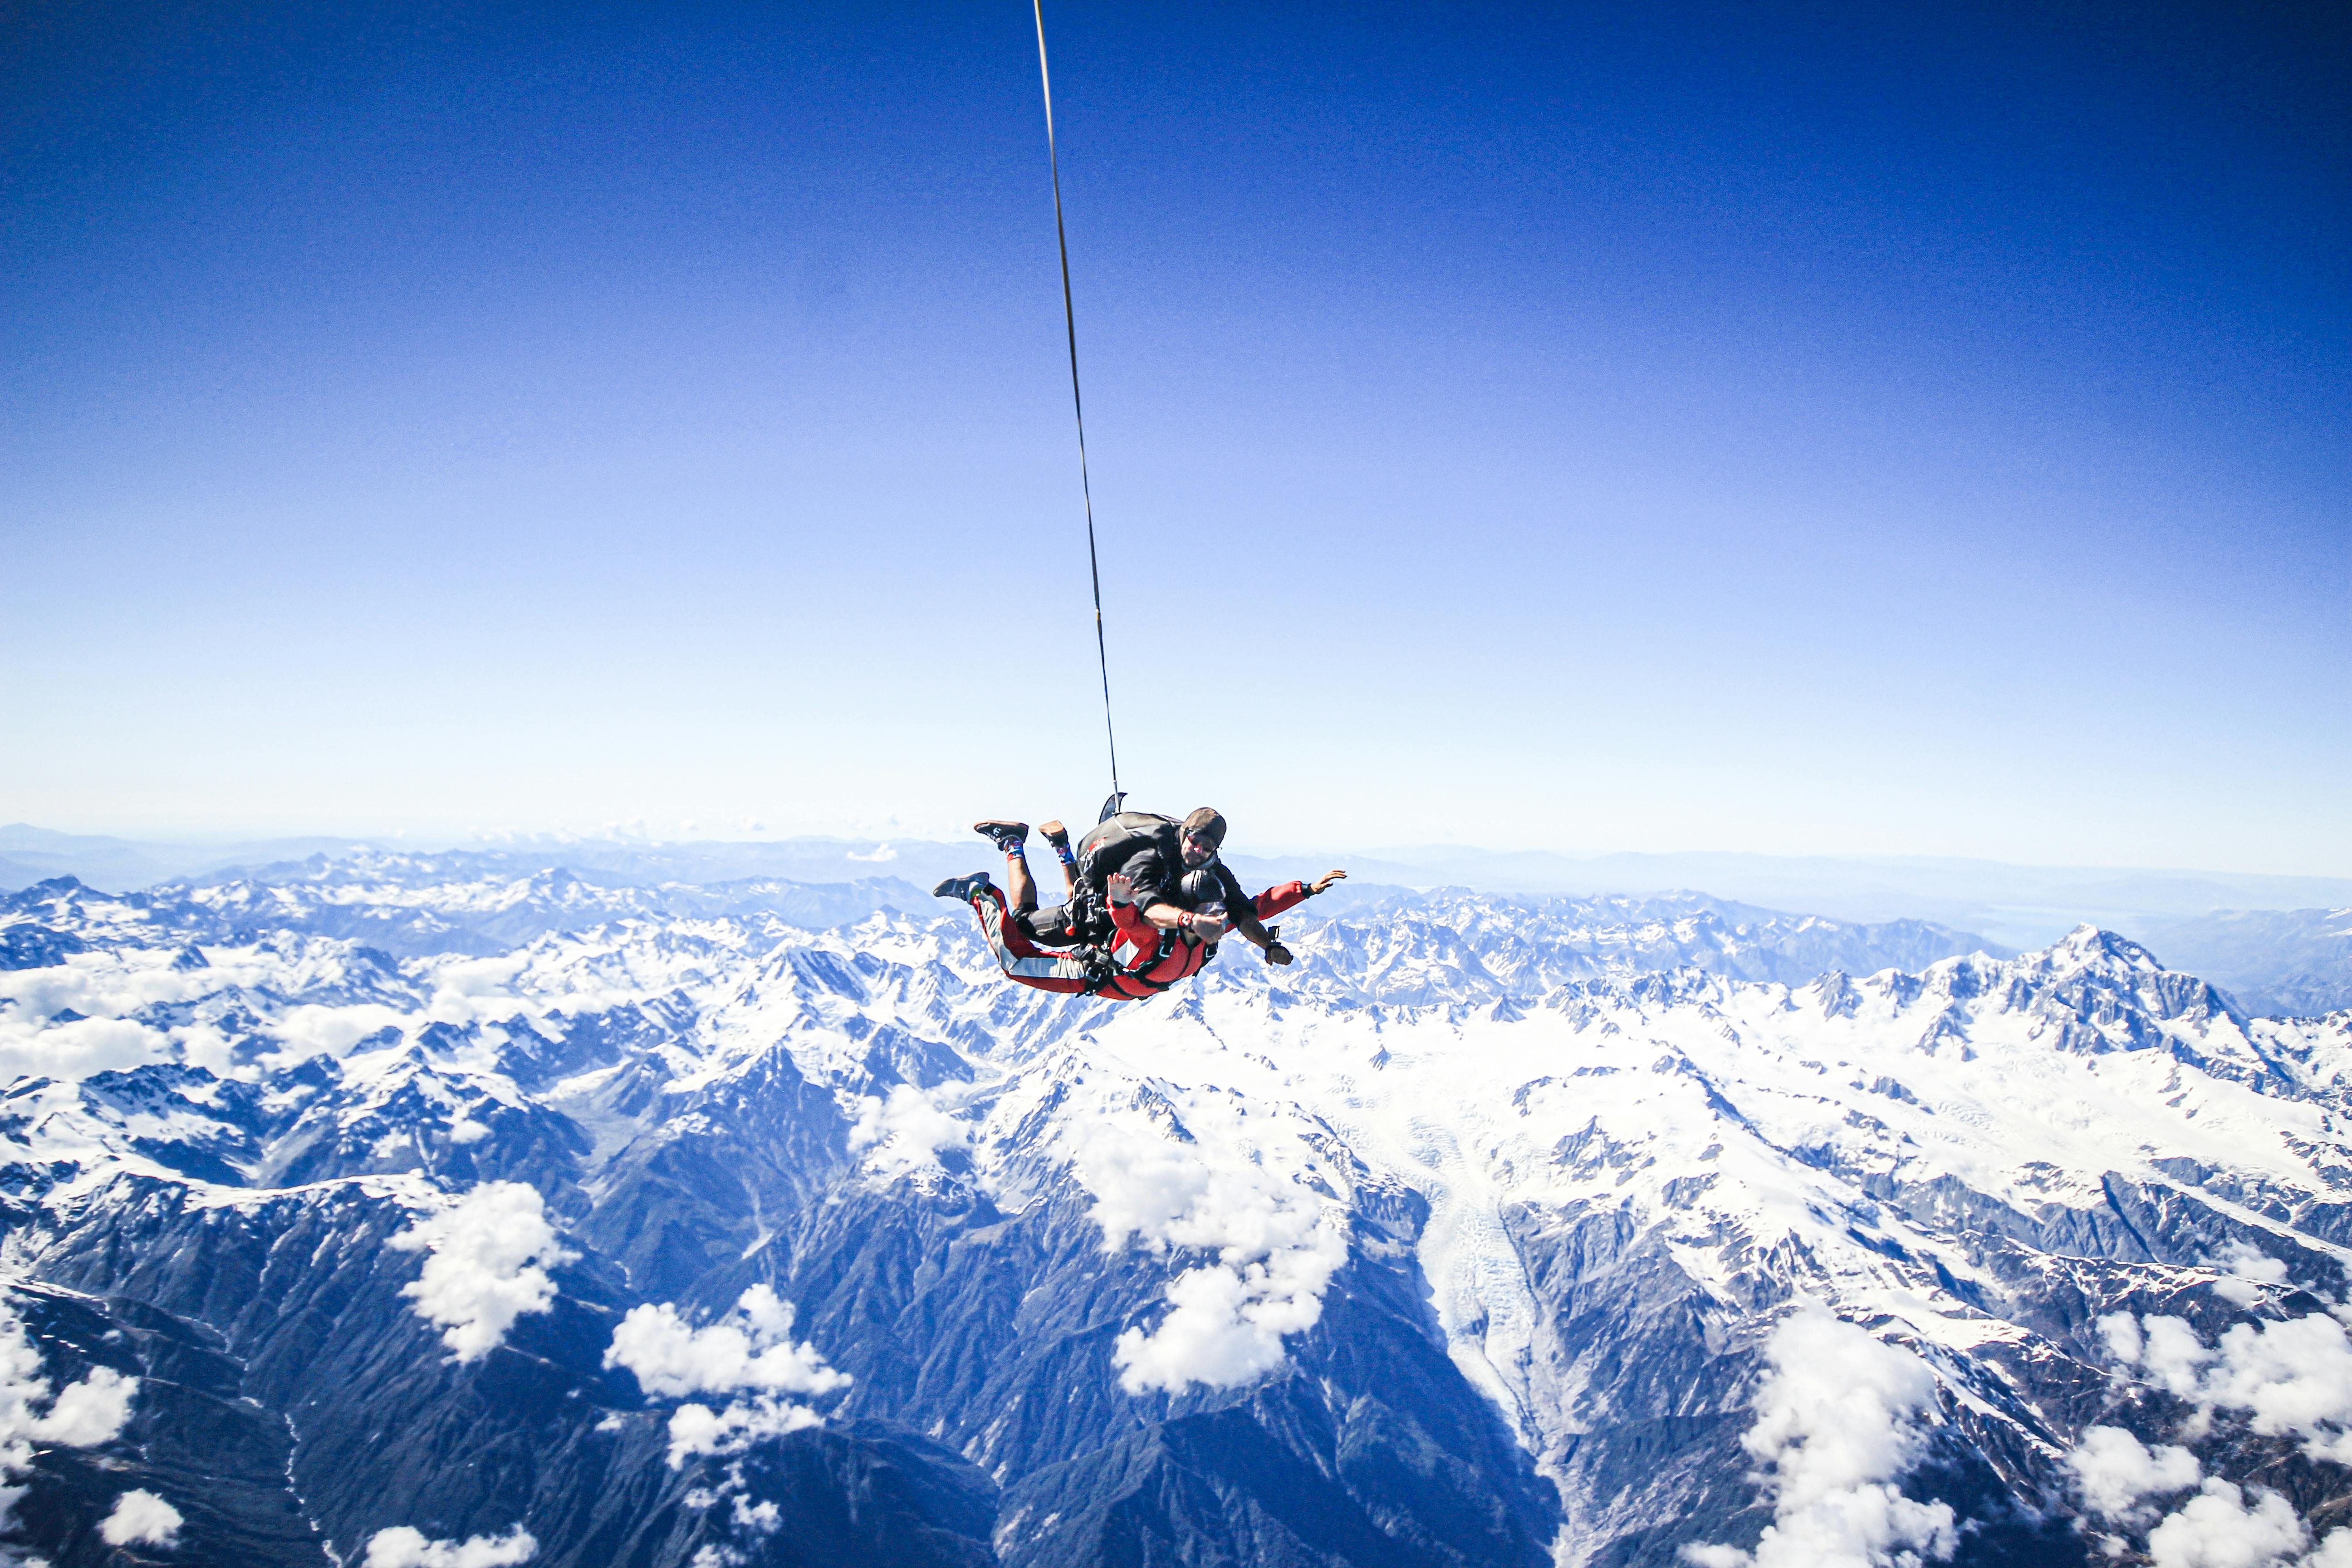 Skok spadochronowy w tandemie na wysokość 5 000 metrów nad lodowcami Franz Josef i Fox